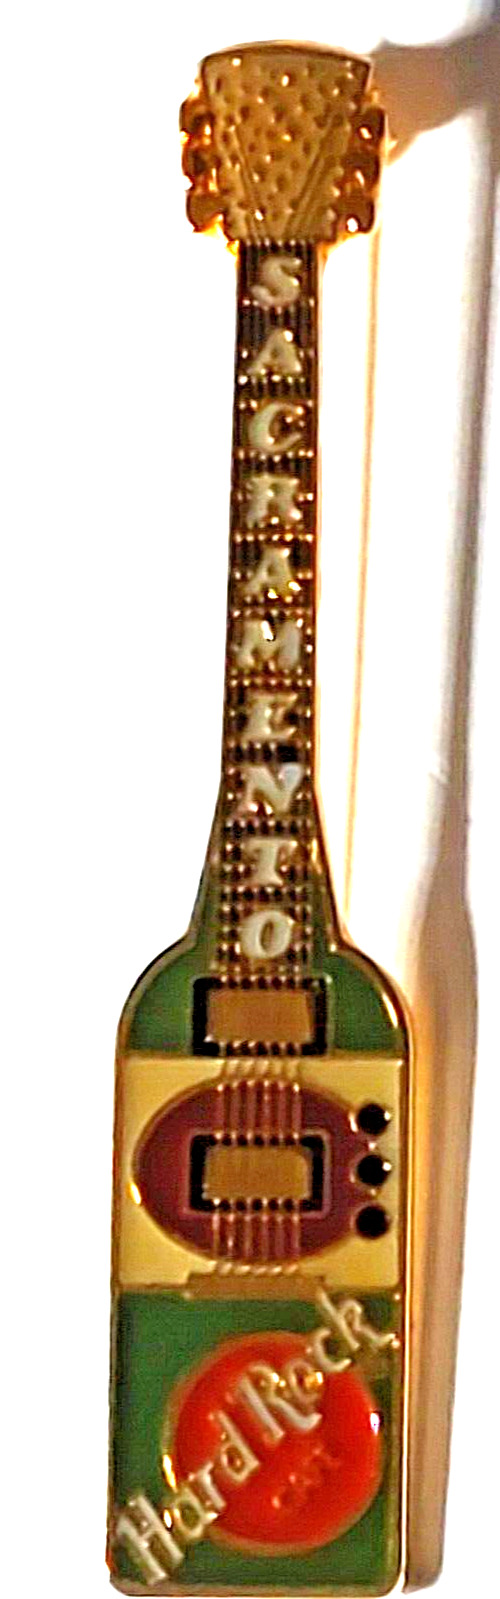 Hard Rock Cafe Sacramento California Guitar Pin (070723)